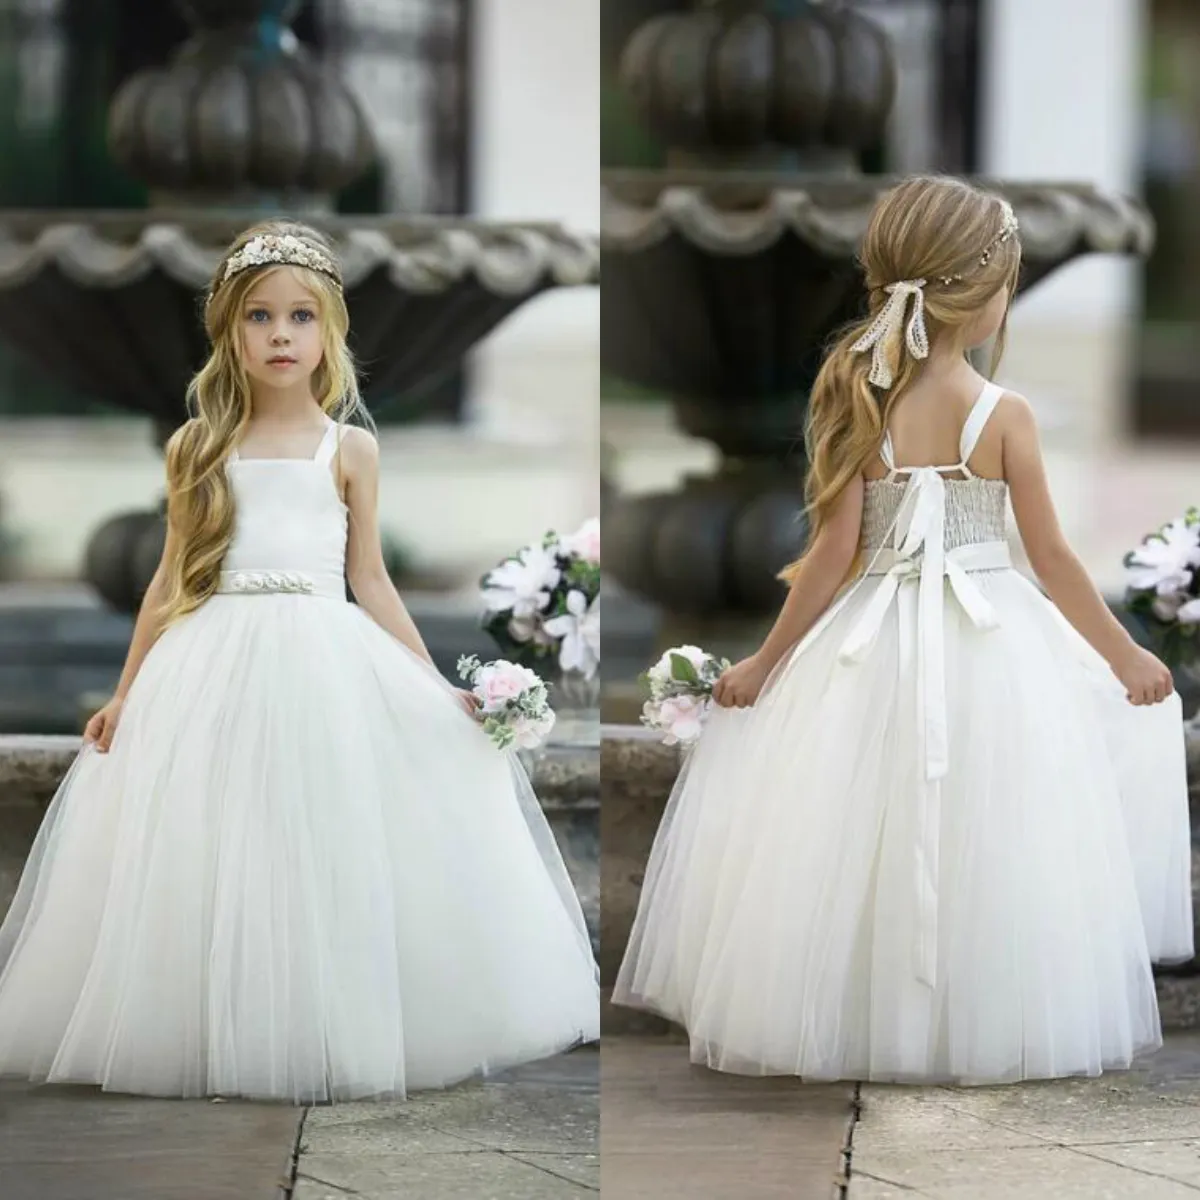 White Dresses Princess Tulle Strap Wear For Wedding D Flower Bow Ribbon Long Length Girls Pegeant Dress